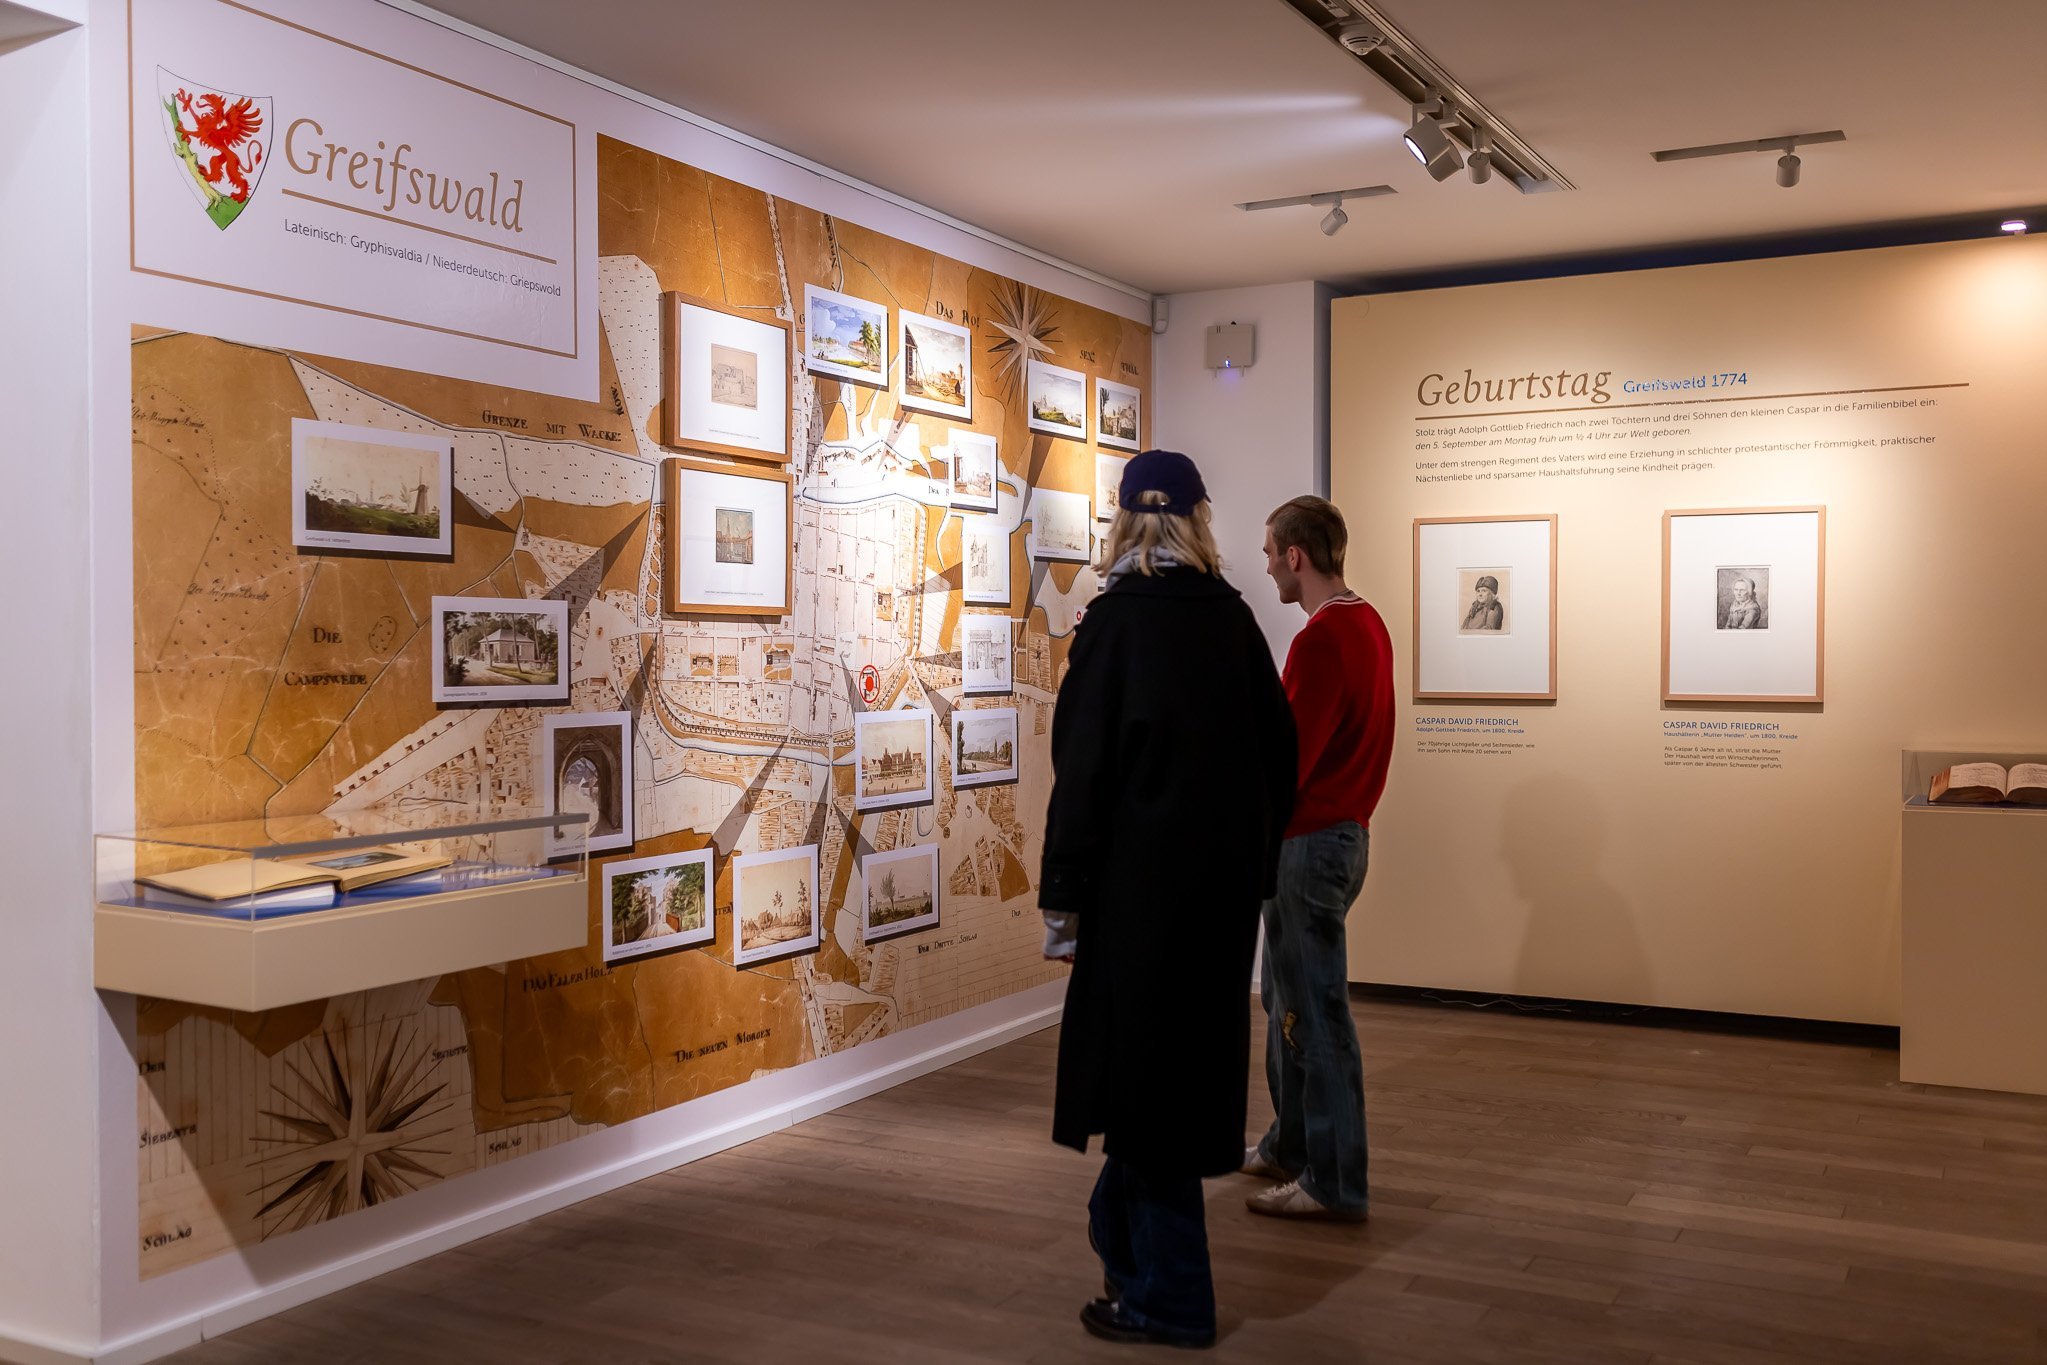 2 Besucher*innen in der Ausstellung, an der linken Wand eine große Karte, rechts zwei Grafiken.